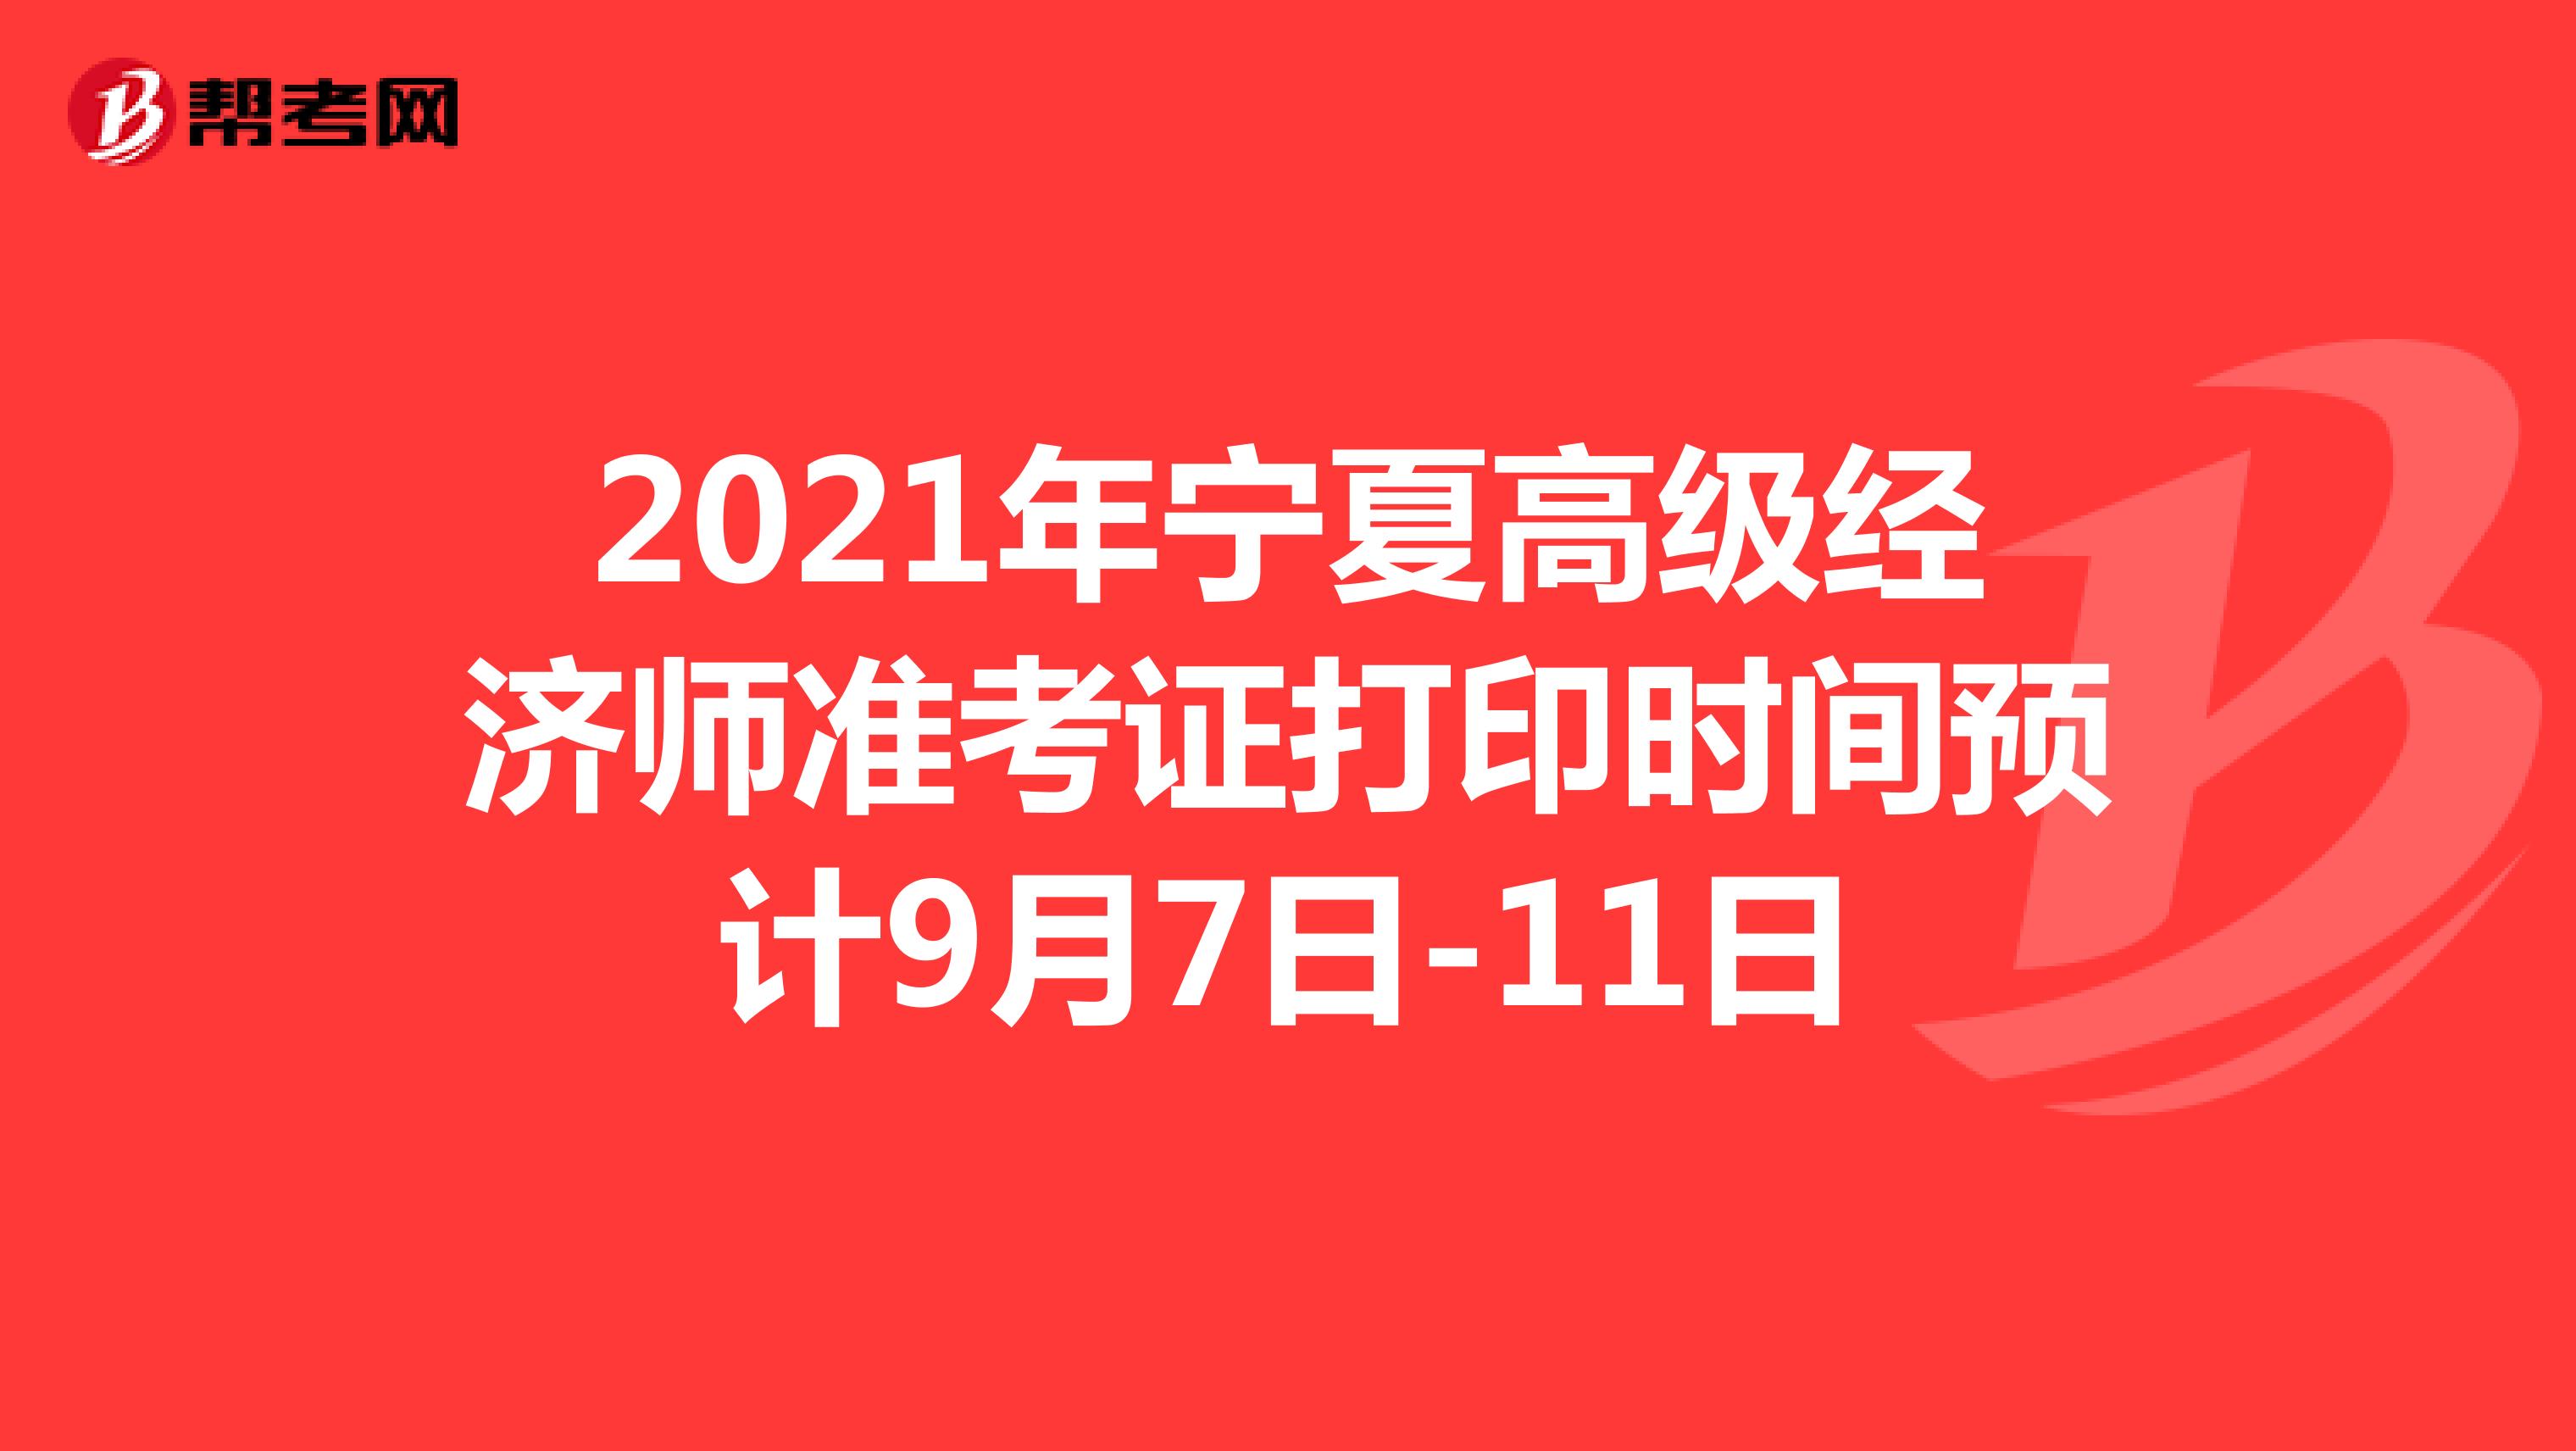 2021年宁夏高级经济师准考证打印时间预计9月7日-11日